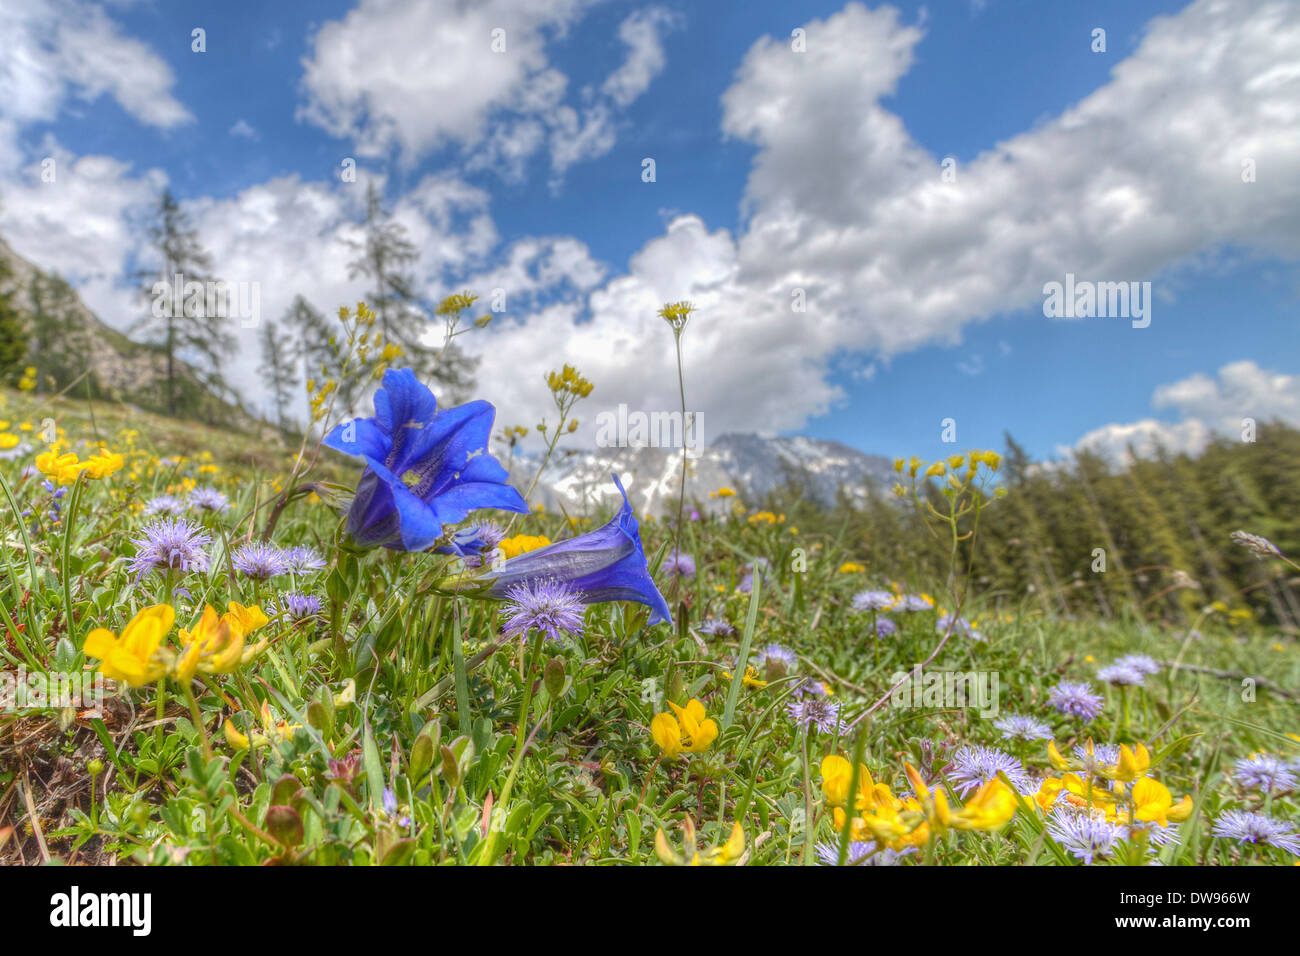 Blooming prados alpinos con Alpine genciana (Gentiana alpina) en la parte delantera, Montañas, Dachstein, Austria Salzburger Land Foto de stock